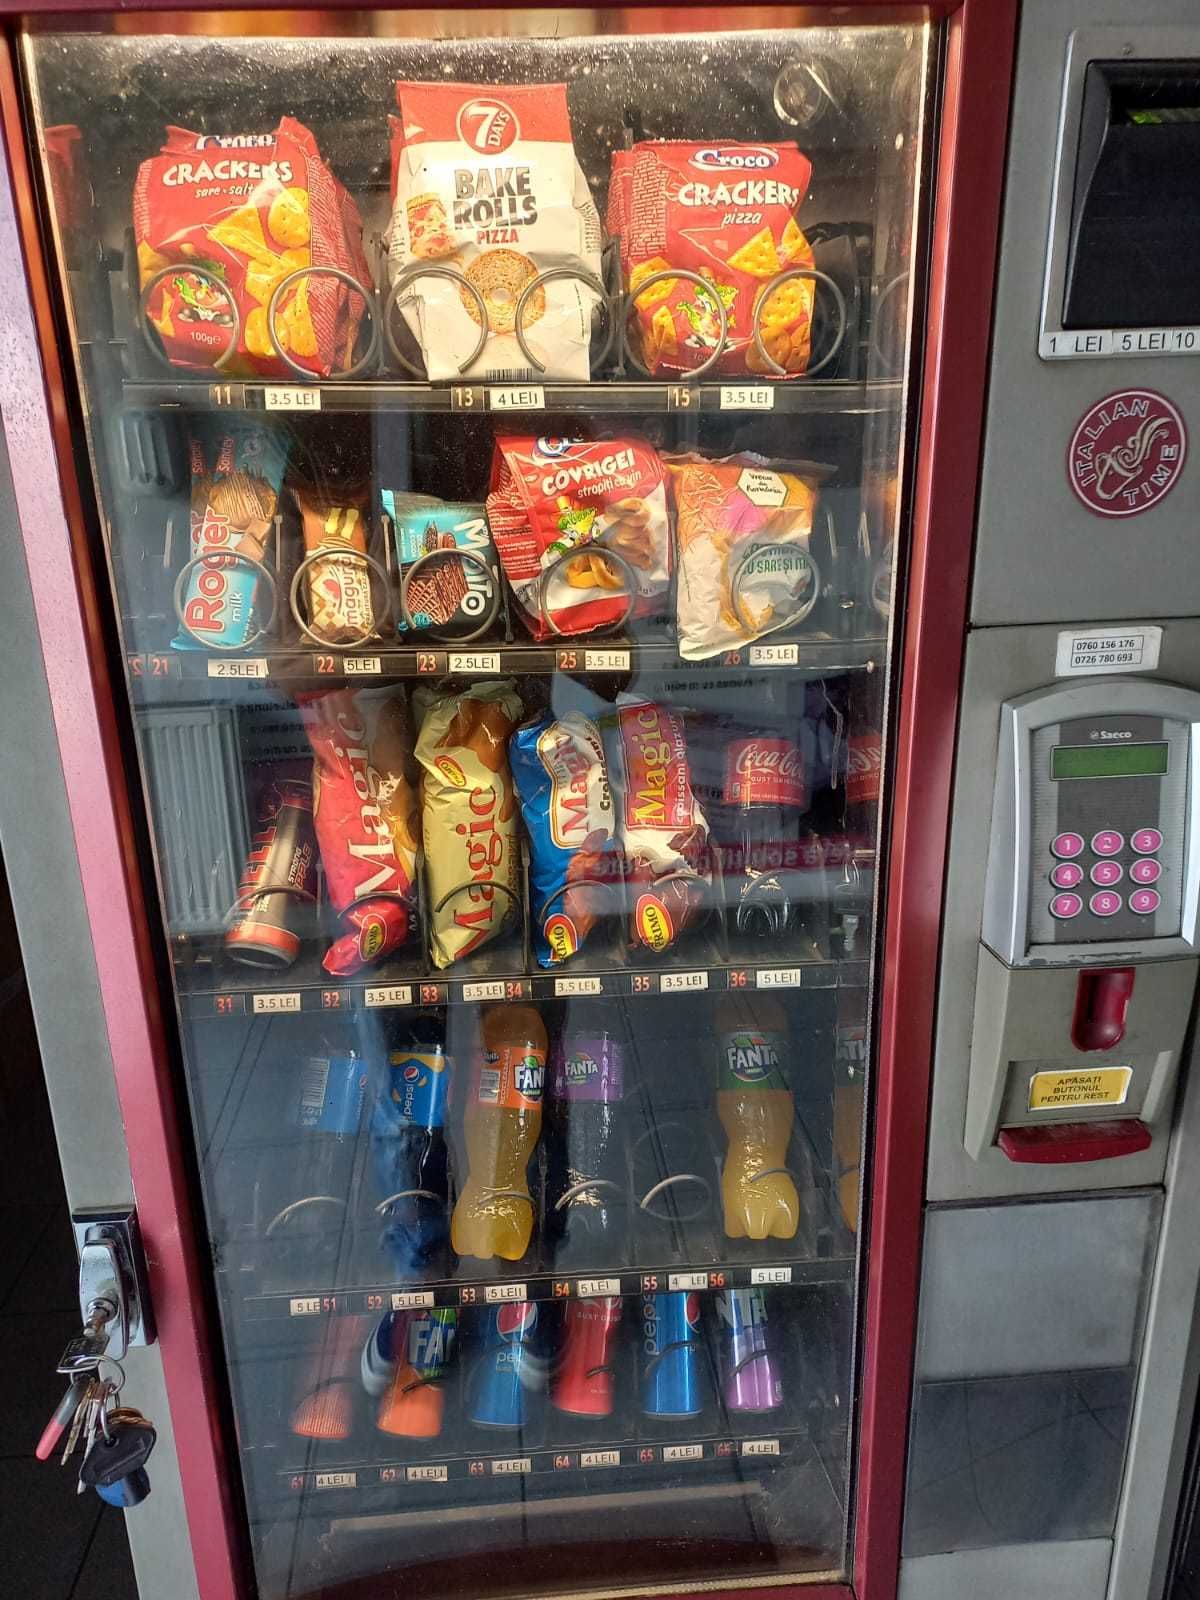 SAECO Vending Machine/Vitrina Automata Frigorifica